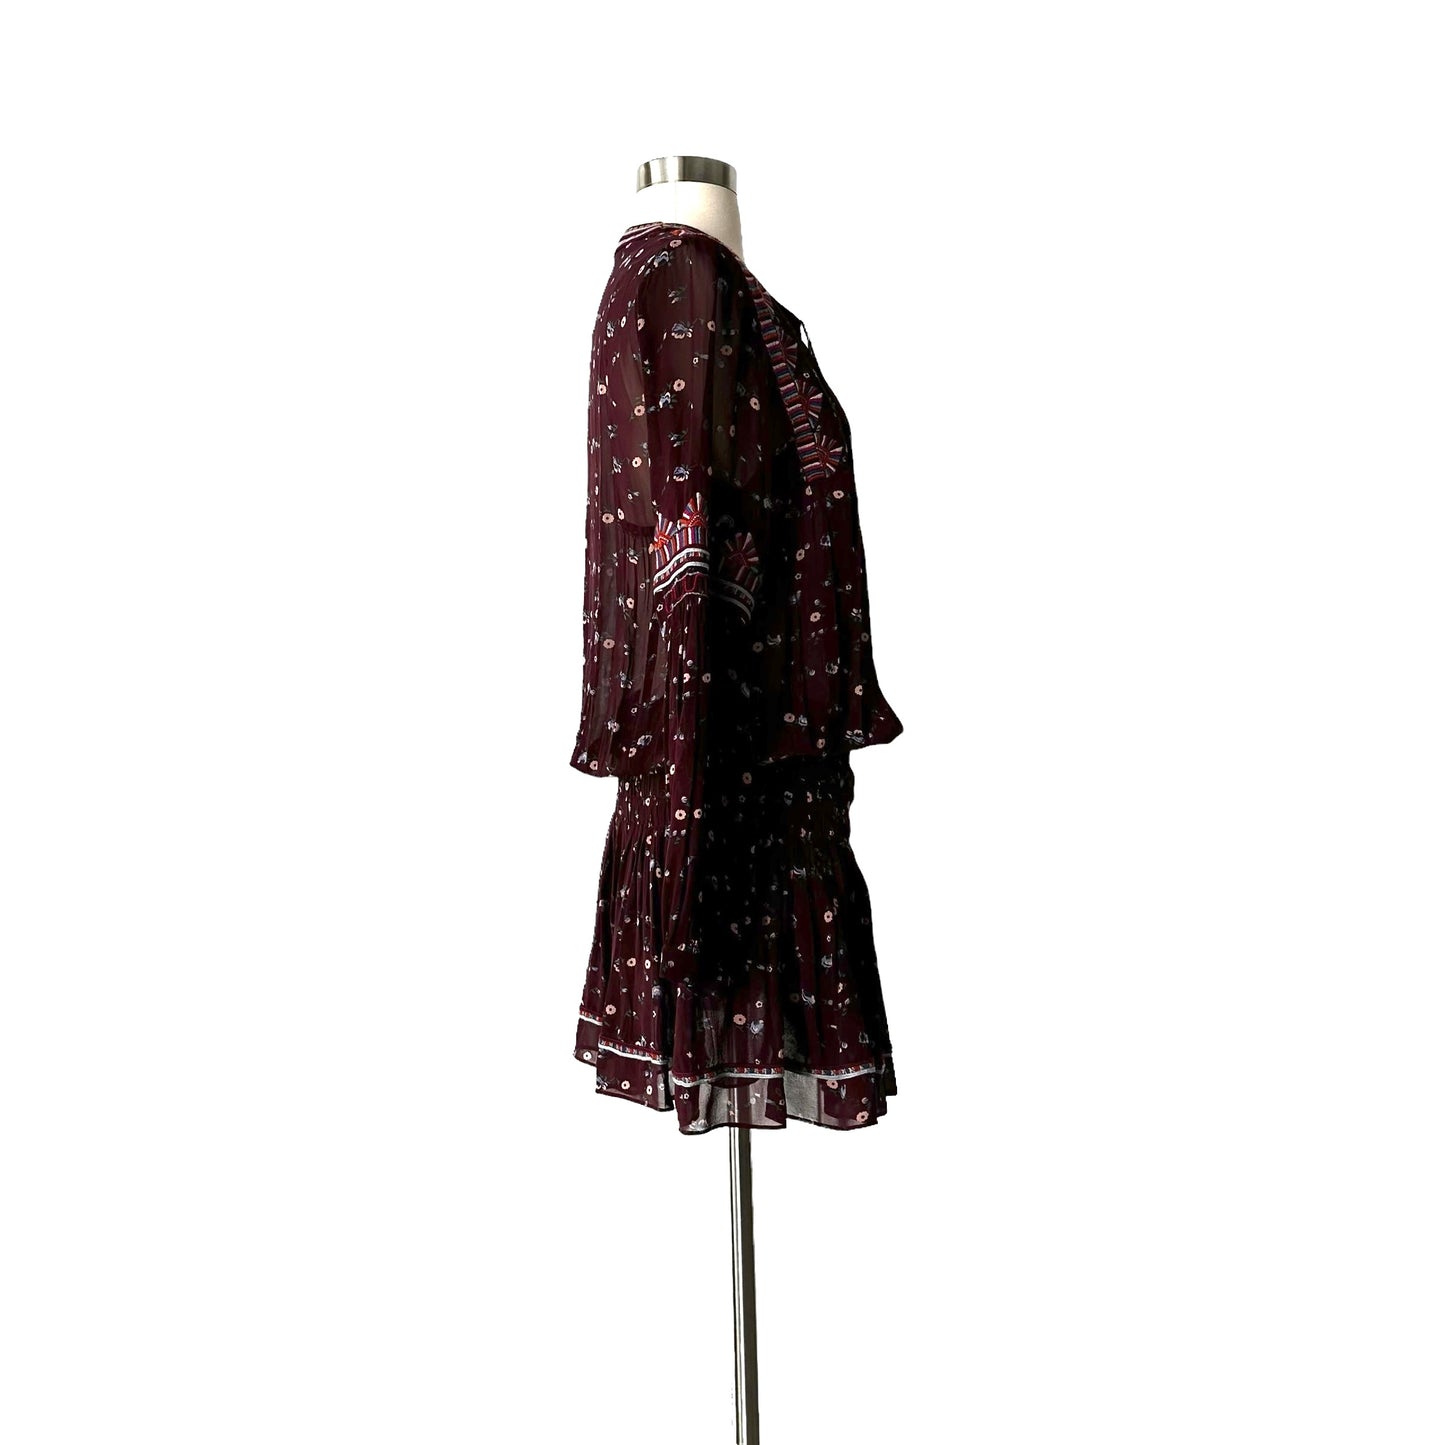 Burgundy Floral Dress - S